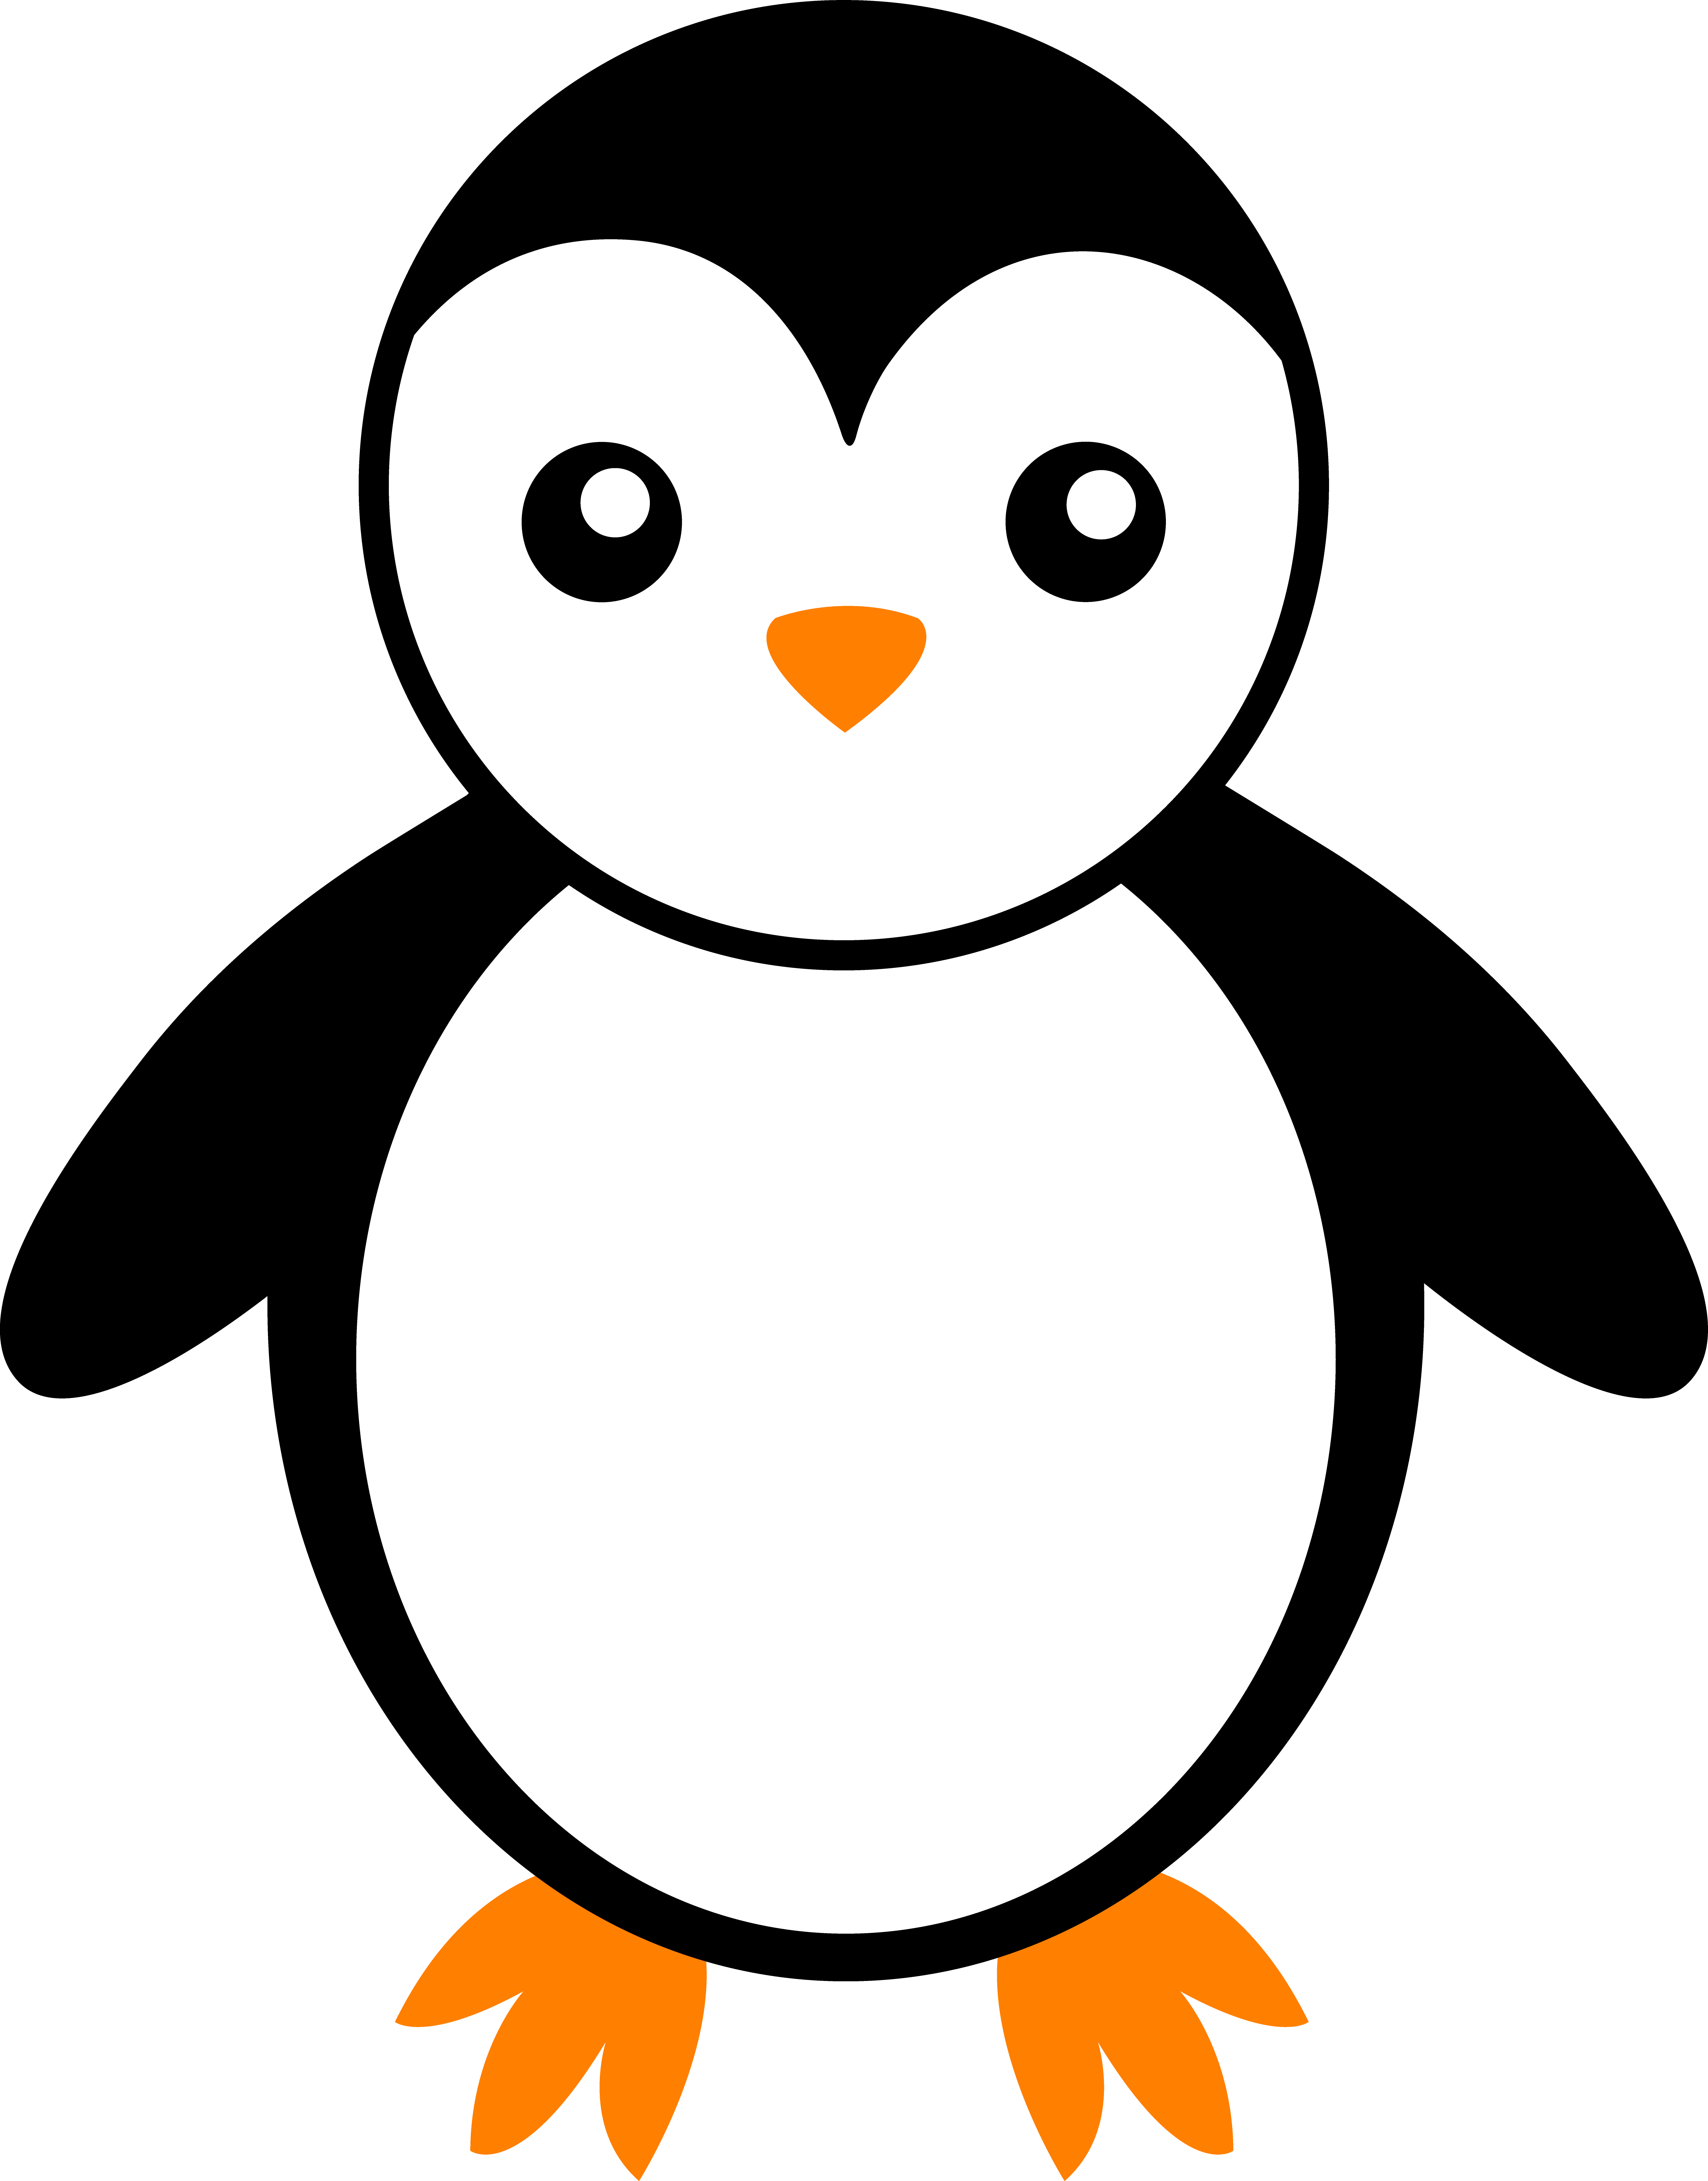 Cute penguin clipart outline - ClipartFox - ClipArt Best - ClipArt Best